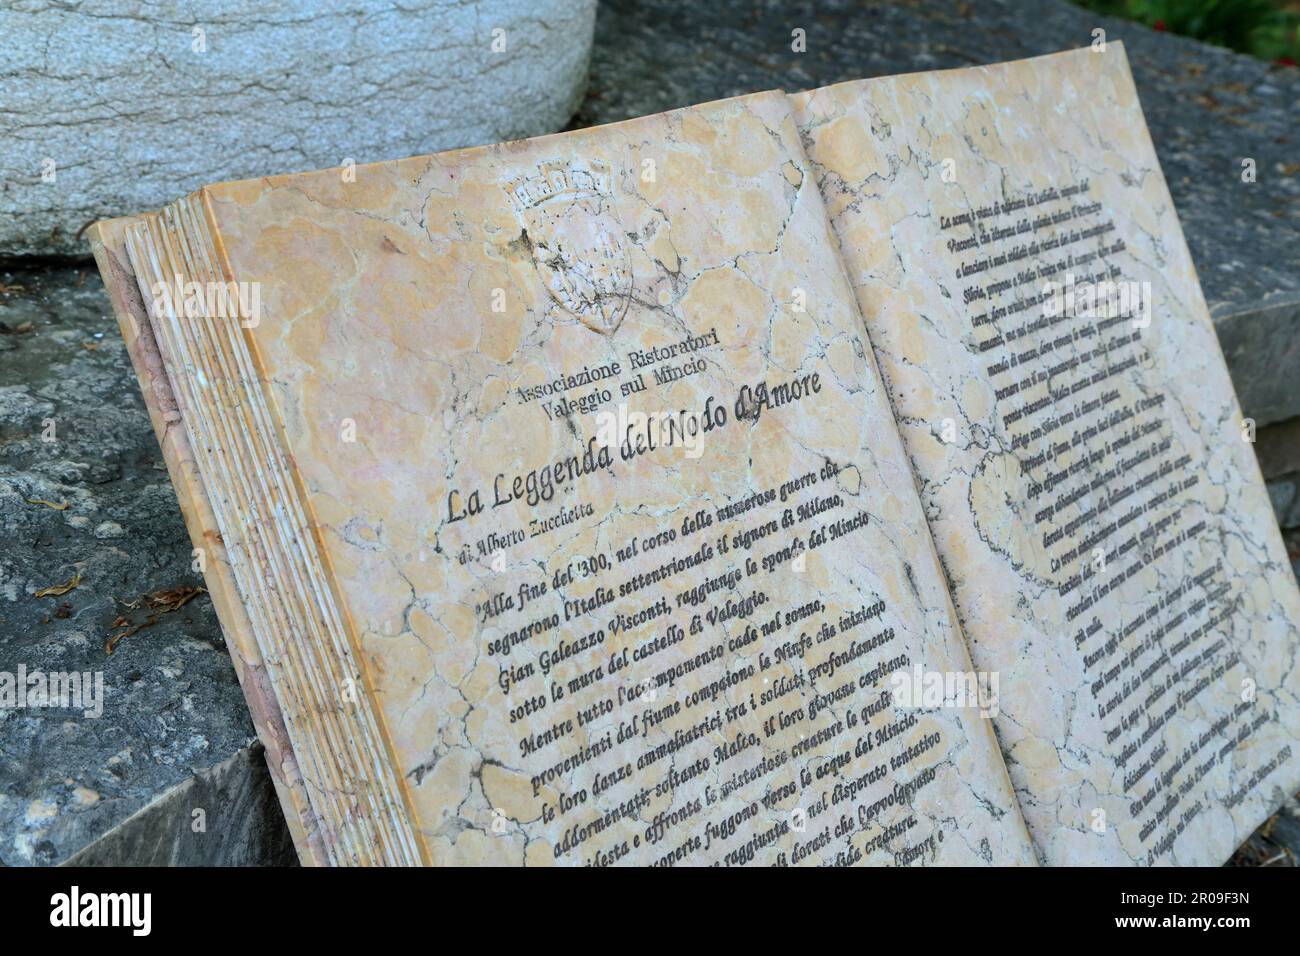 Stone book sculpture of The legend of the Love Knot (La Leggenda del Nodo d'Amore). Valeggio sul Mincio, Italy. Stock Photo